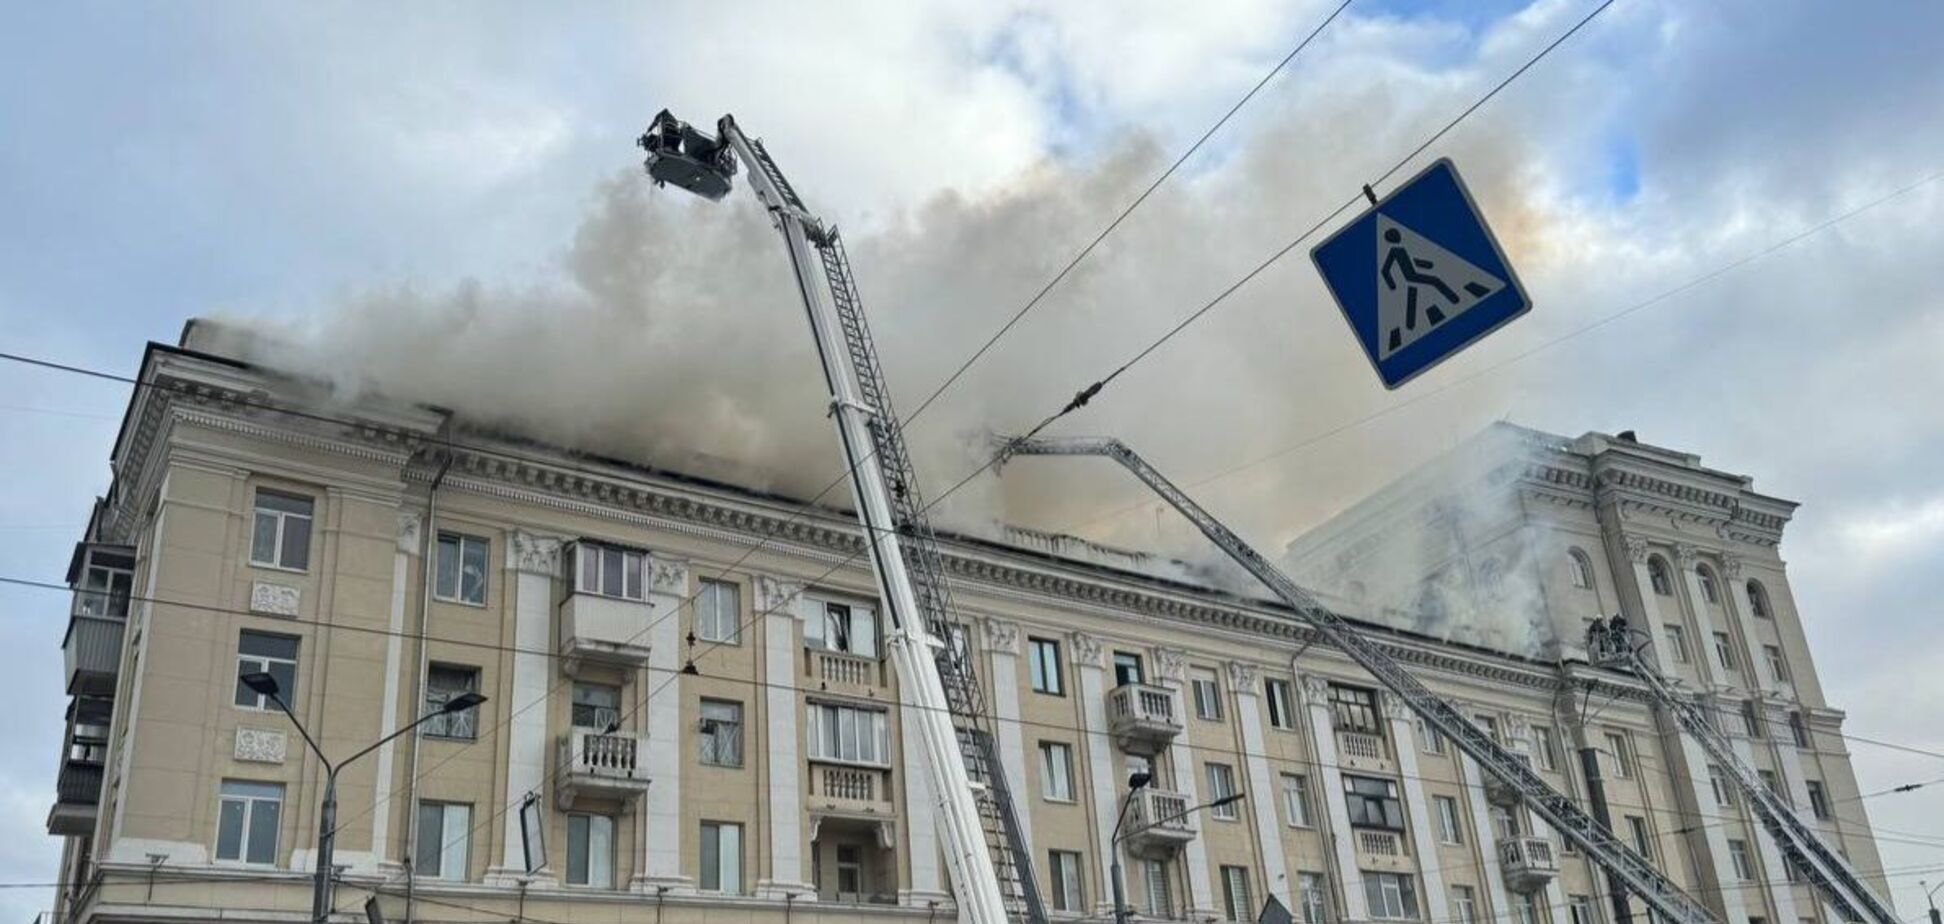 Россия ударила по Днепру, есть прилет в пятиэтажку: два человека погибли, десятки ранены, разбор завалов продолжается. Фото и видео